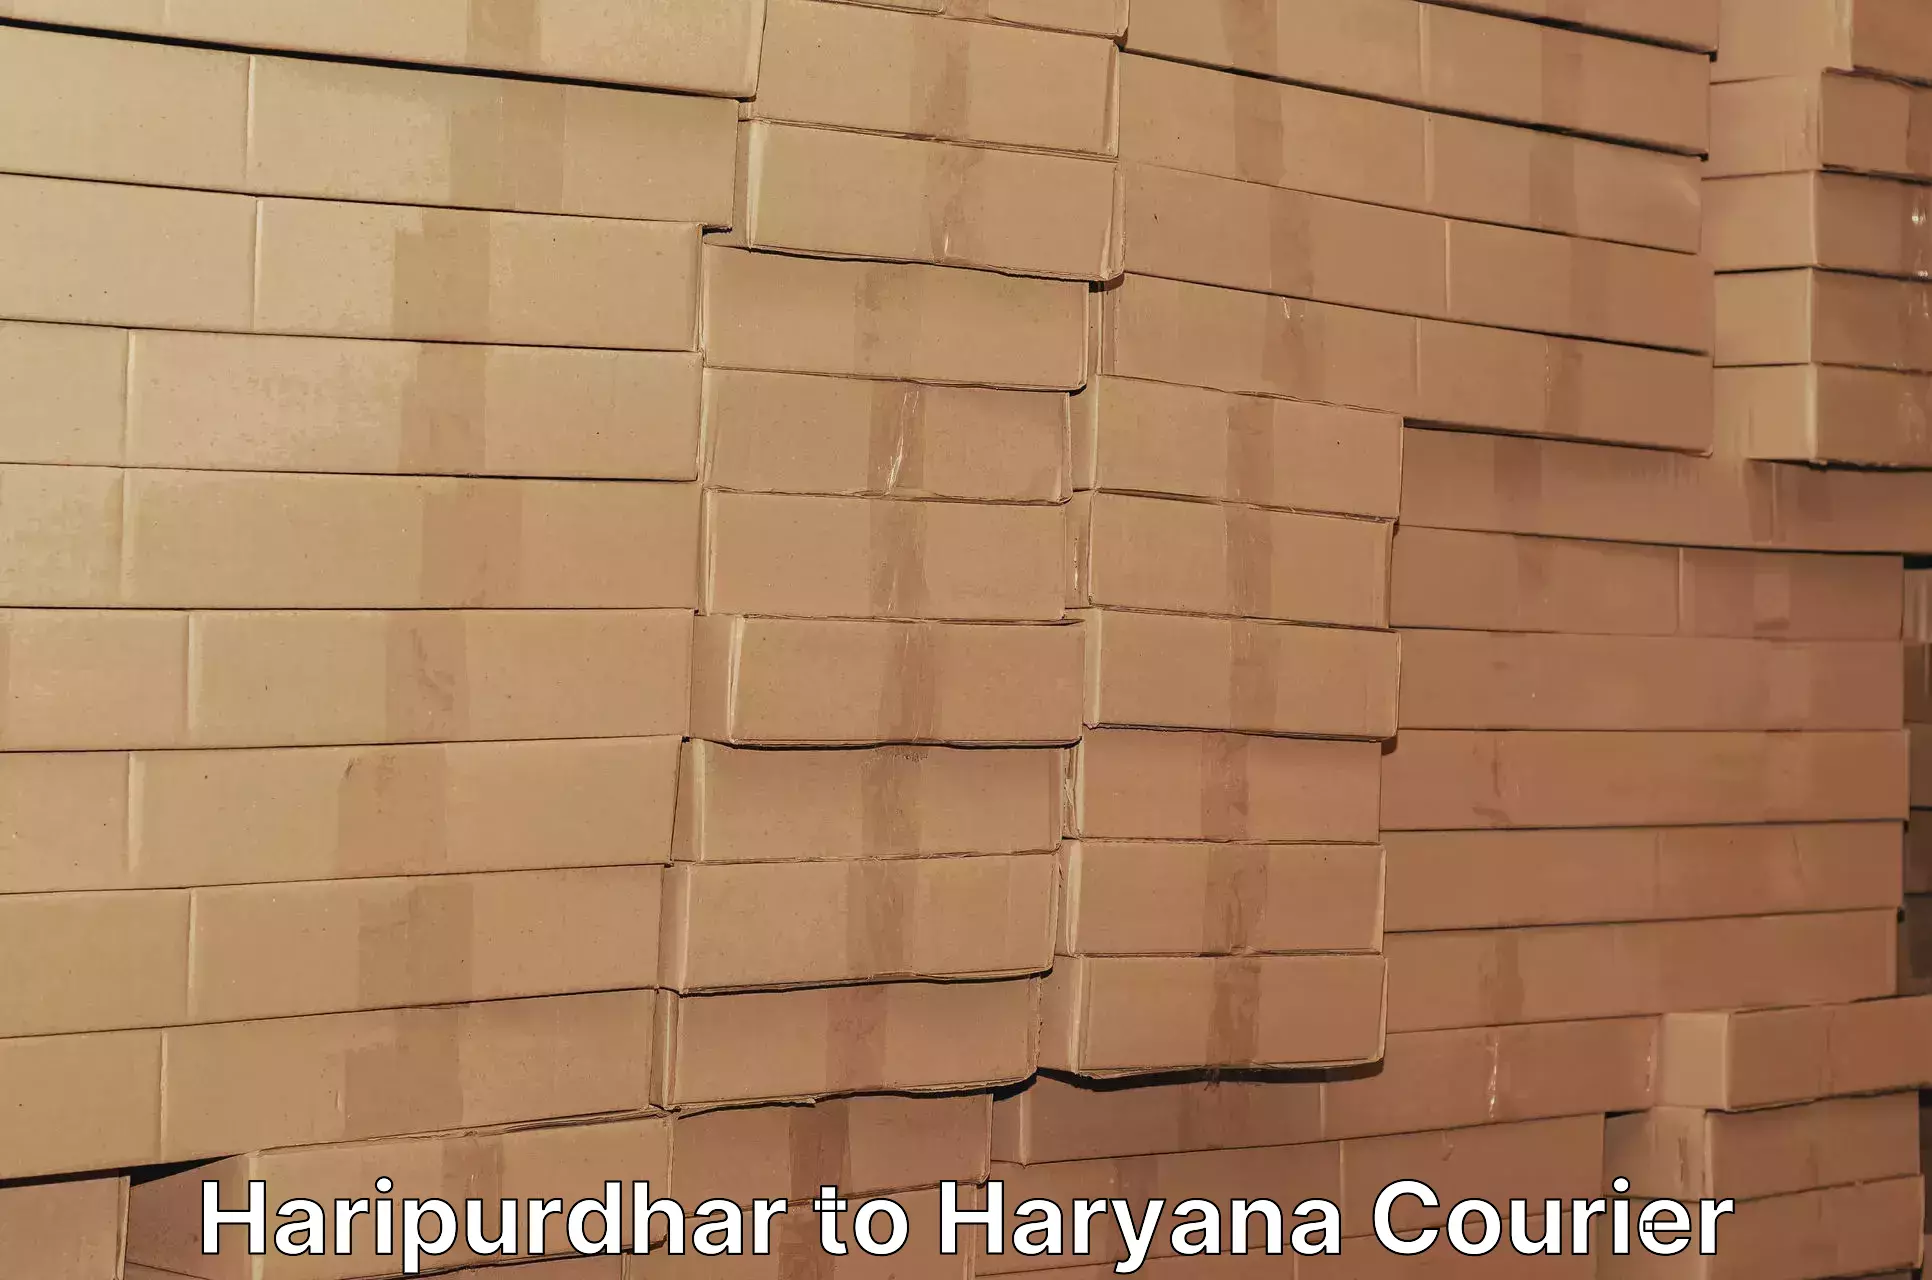 Professional courier handling Haripurdhar to Panchkula